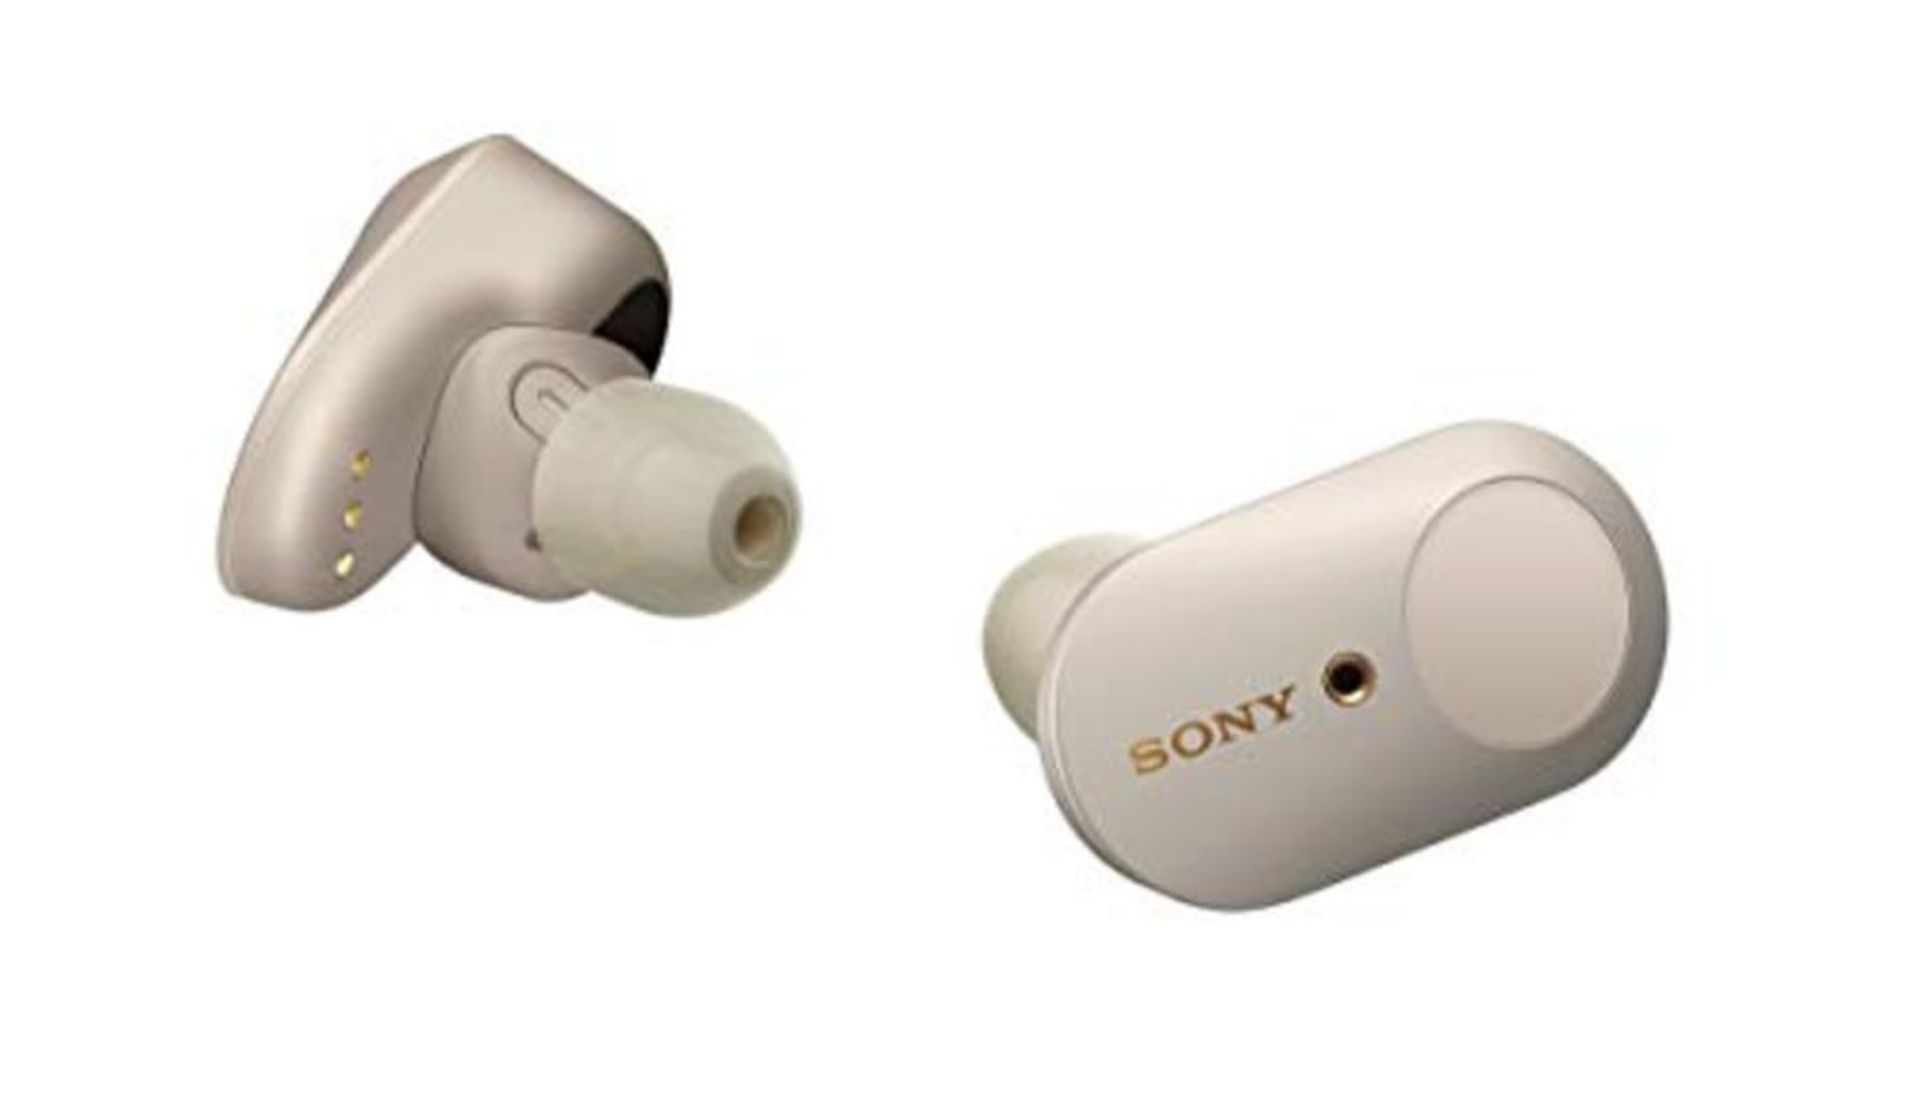 RRP £129.00 [INCOMPLETE] Sony WF-1000XM3 vollkommen kabellose Bluetooth KopfhÃ¶rer / Earbuds mit